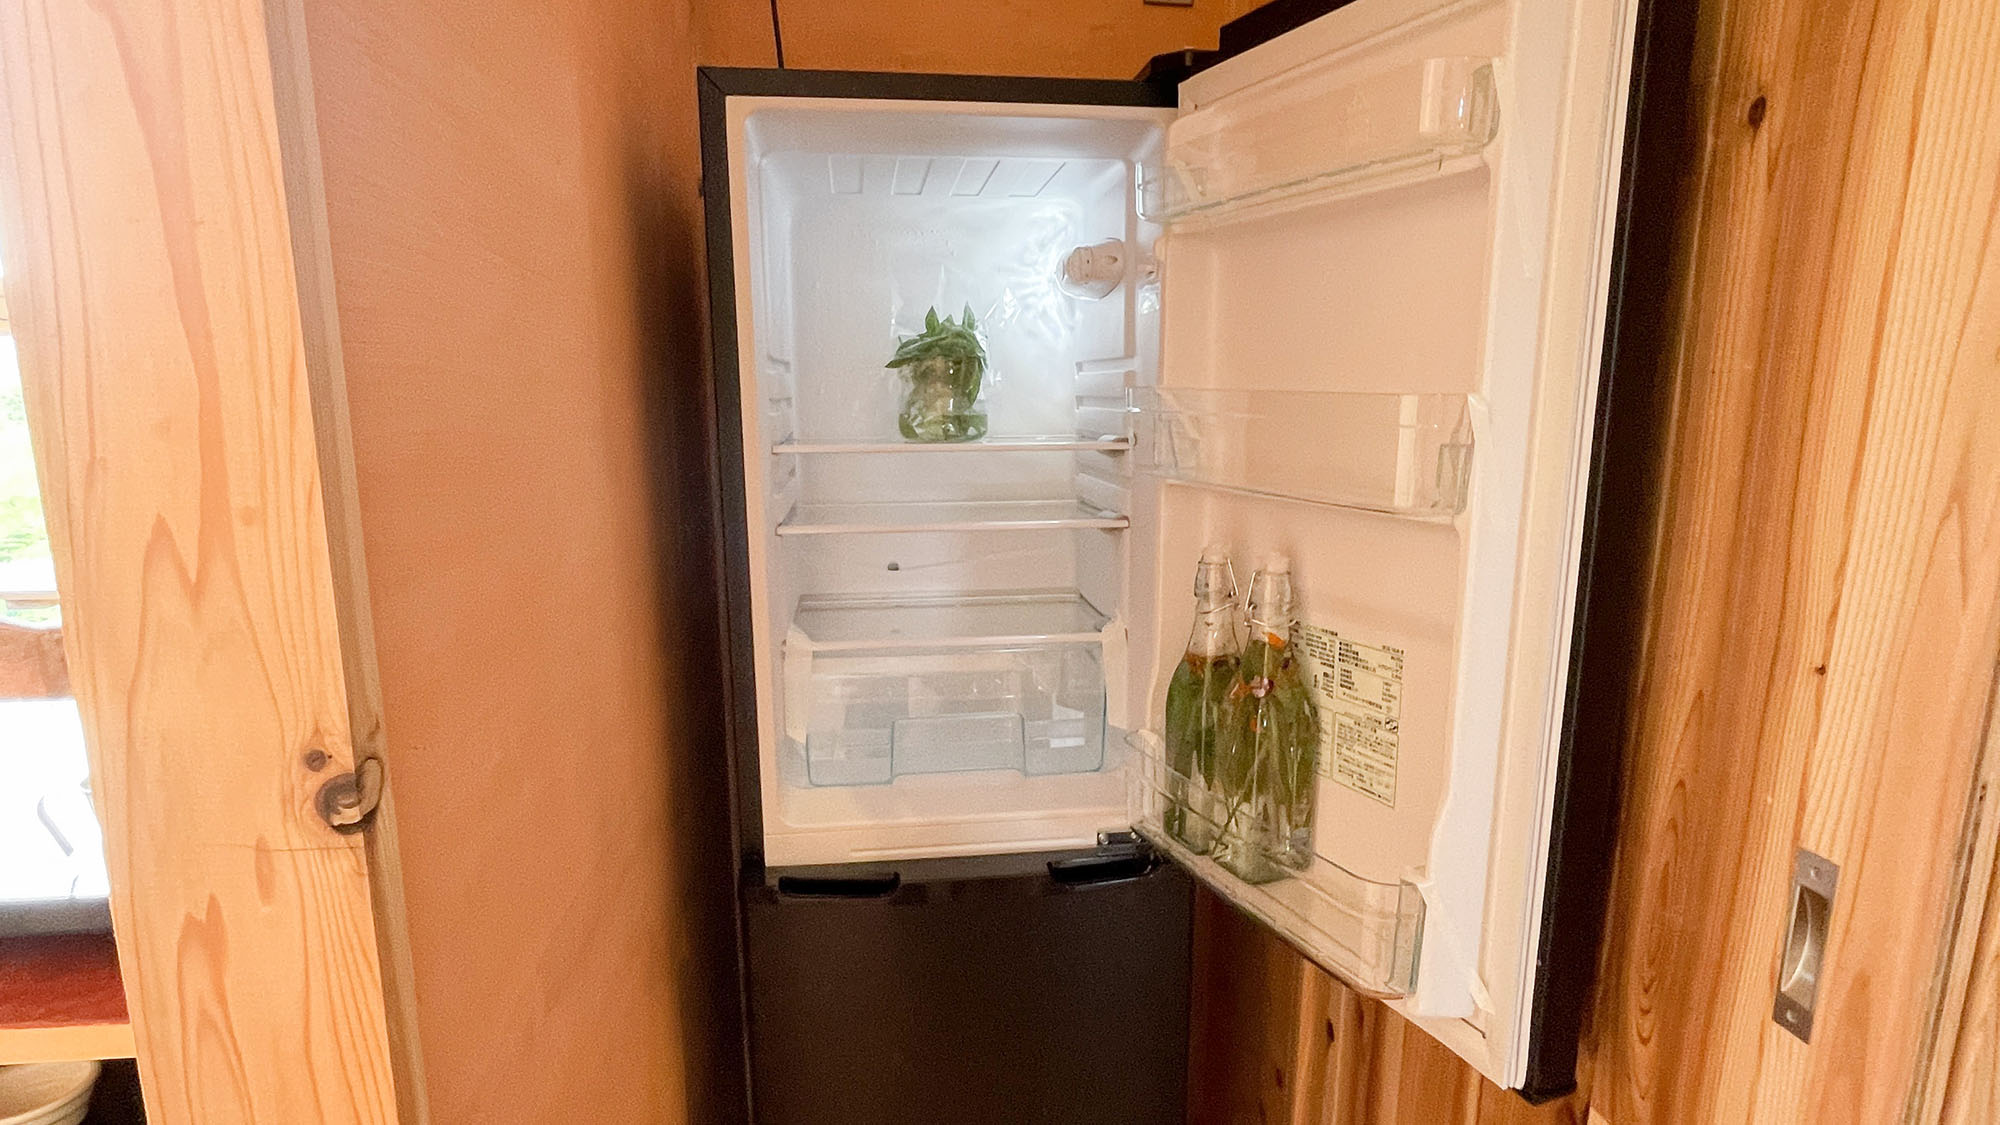 ・【キッチン】キッチン内には冷蔵庫や電子レンジなどの電化製品もご用意しております。